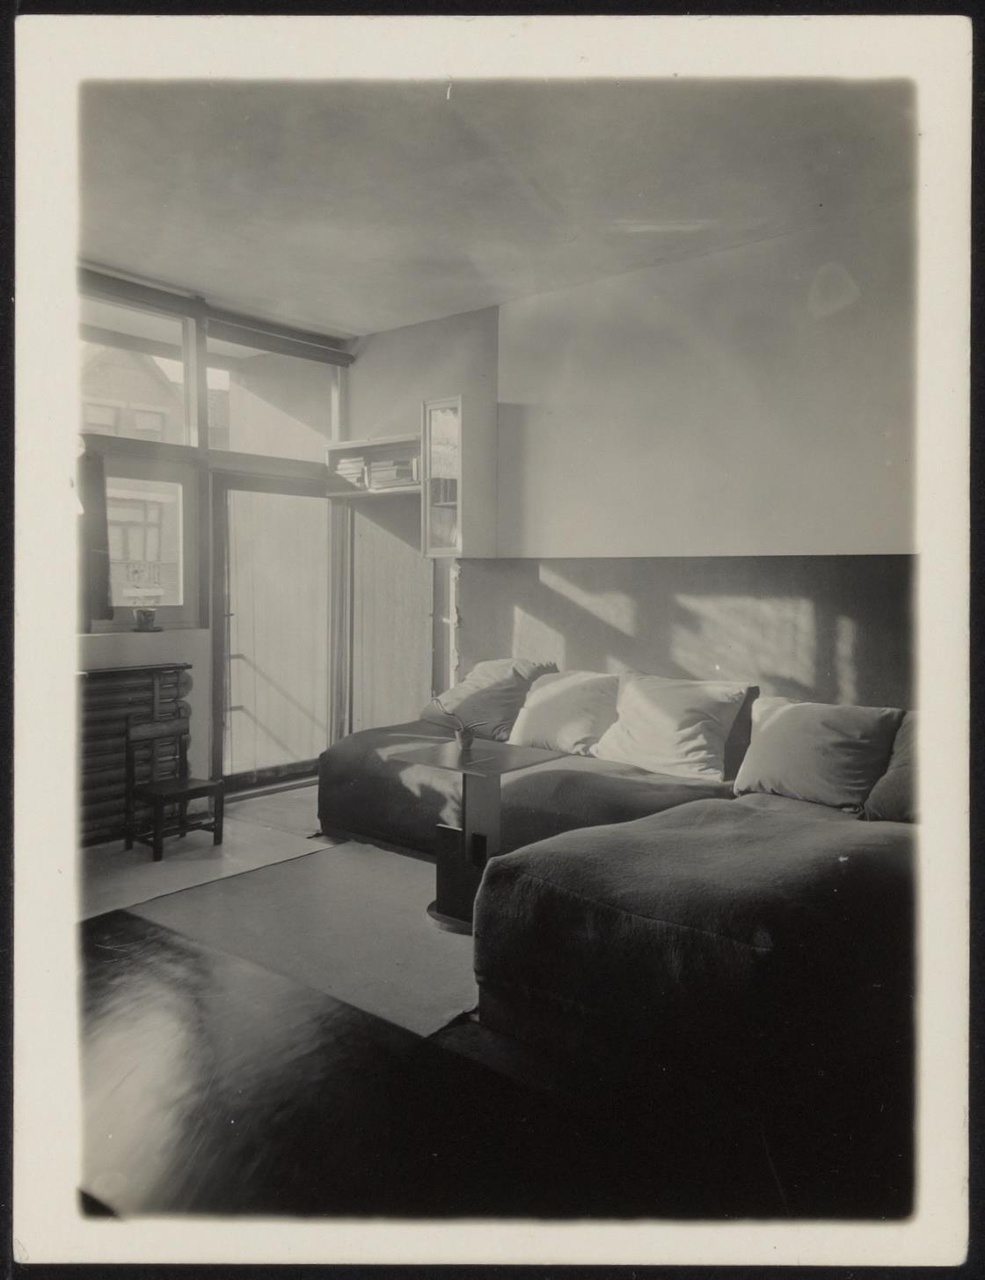 Afbeelding van Rietveld Schröderhuis - interieur boven - meisjeskamer, bedden als divans met hoezen